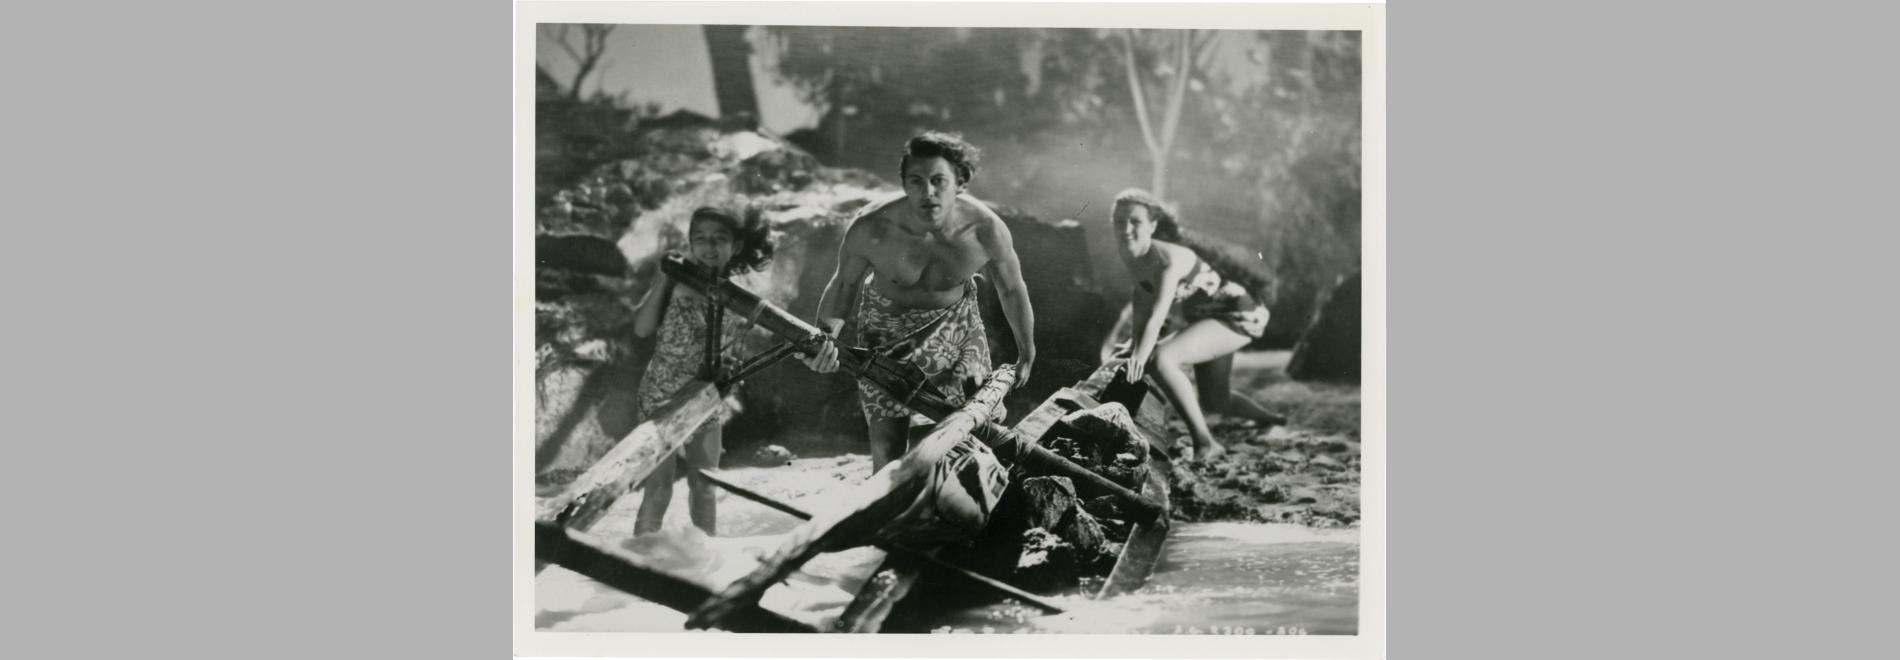 The Hurricane (John Ford, 1937)